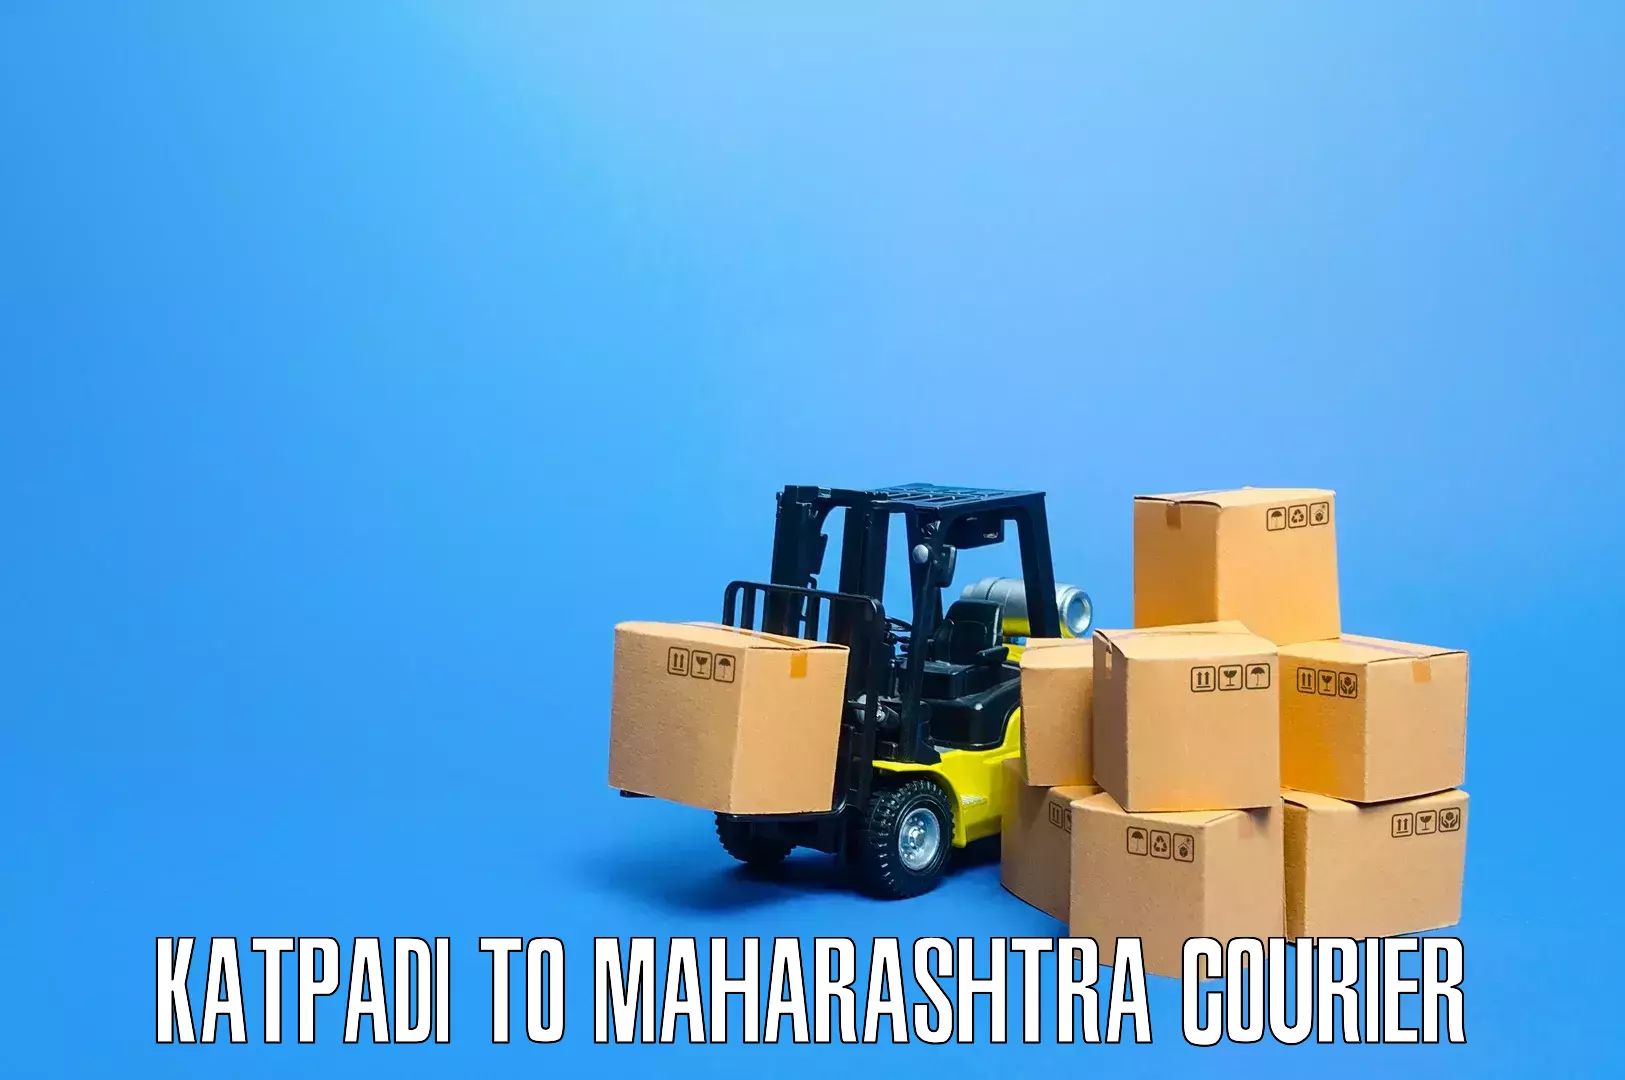 Moving and packing experts in Katpadi to Maharashtra